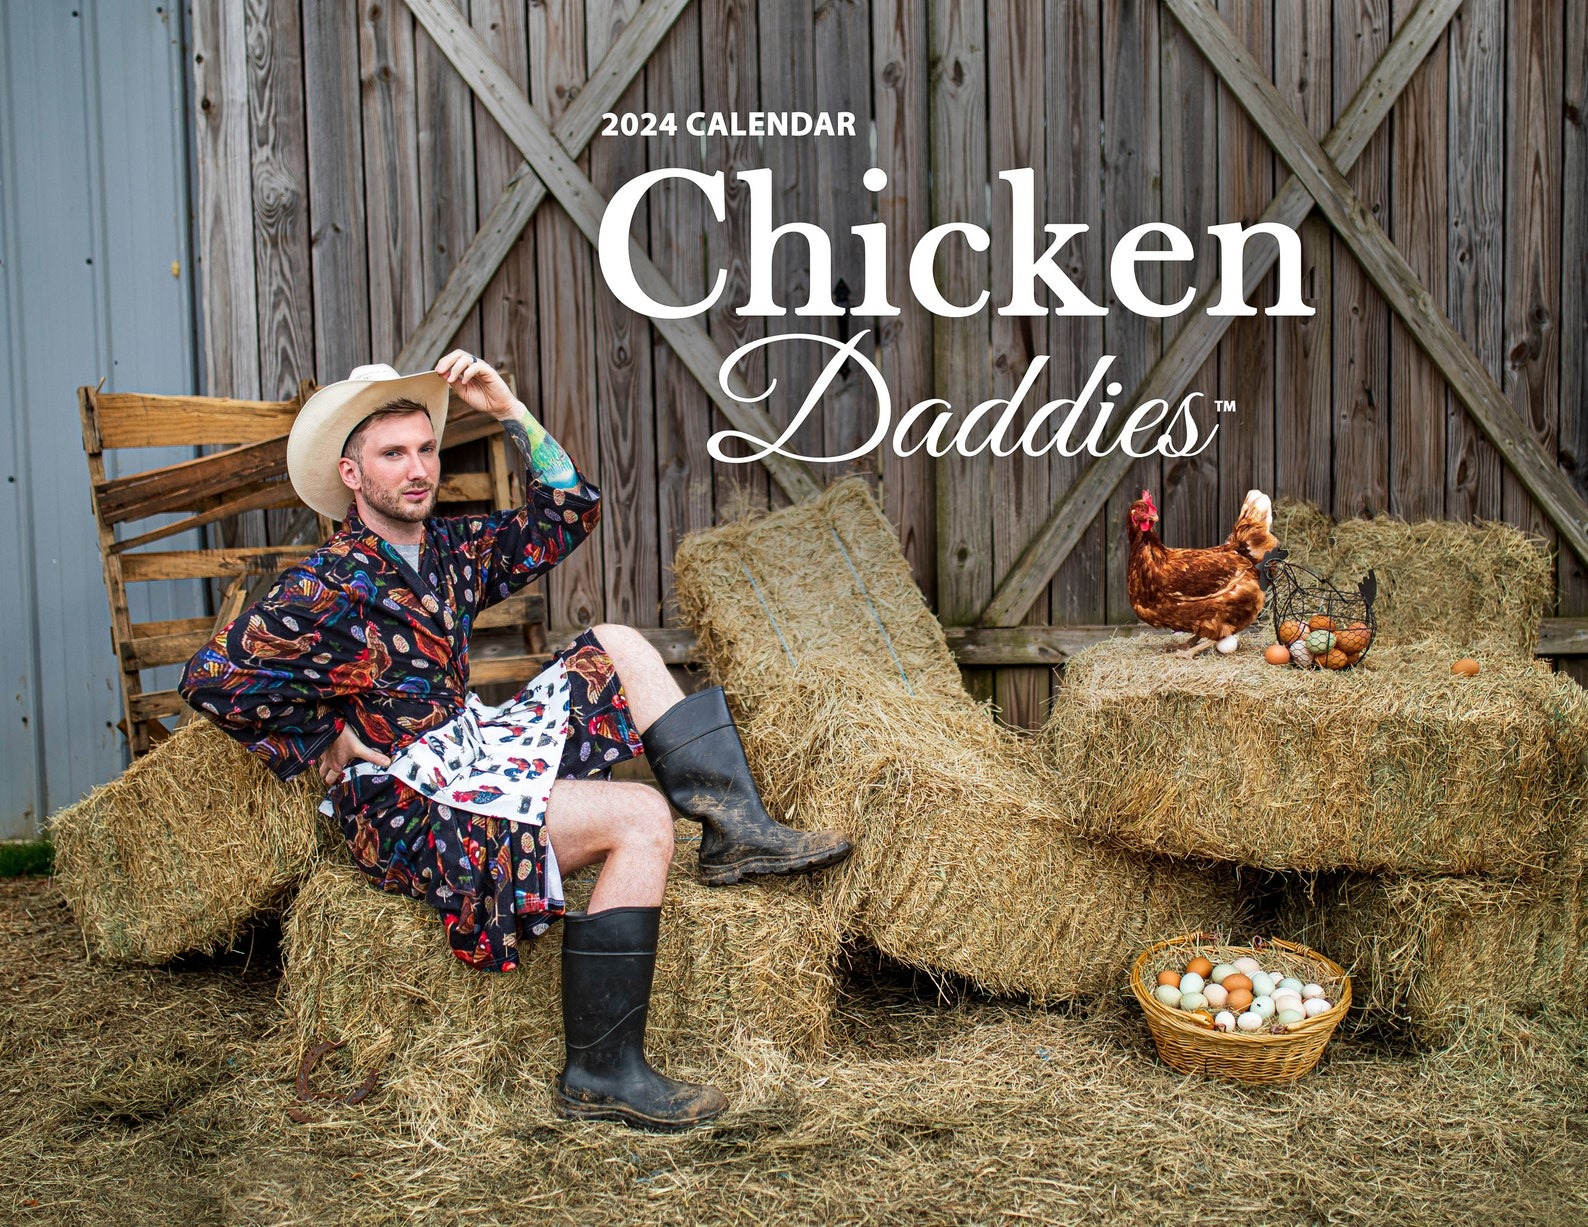 Bigpicture.ru Фермеры и их курочки в календаре Chicken Daddies1588xn.5288765700 f4yd